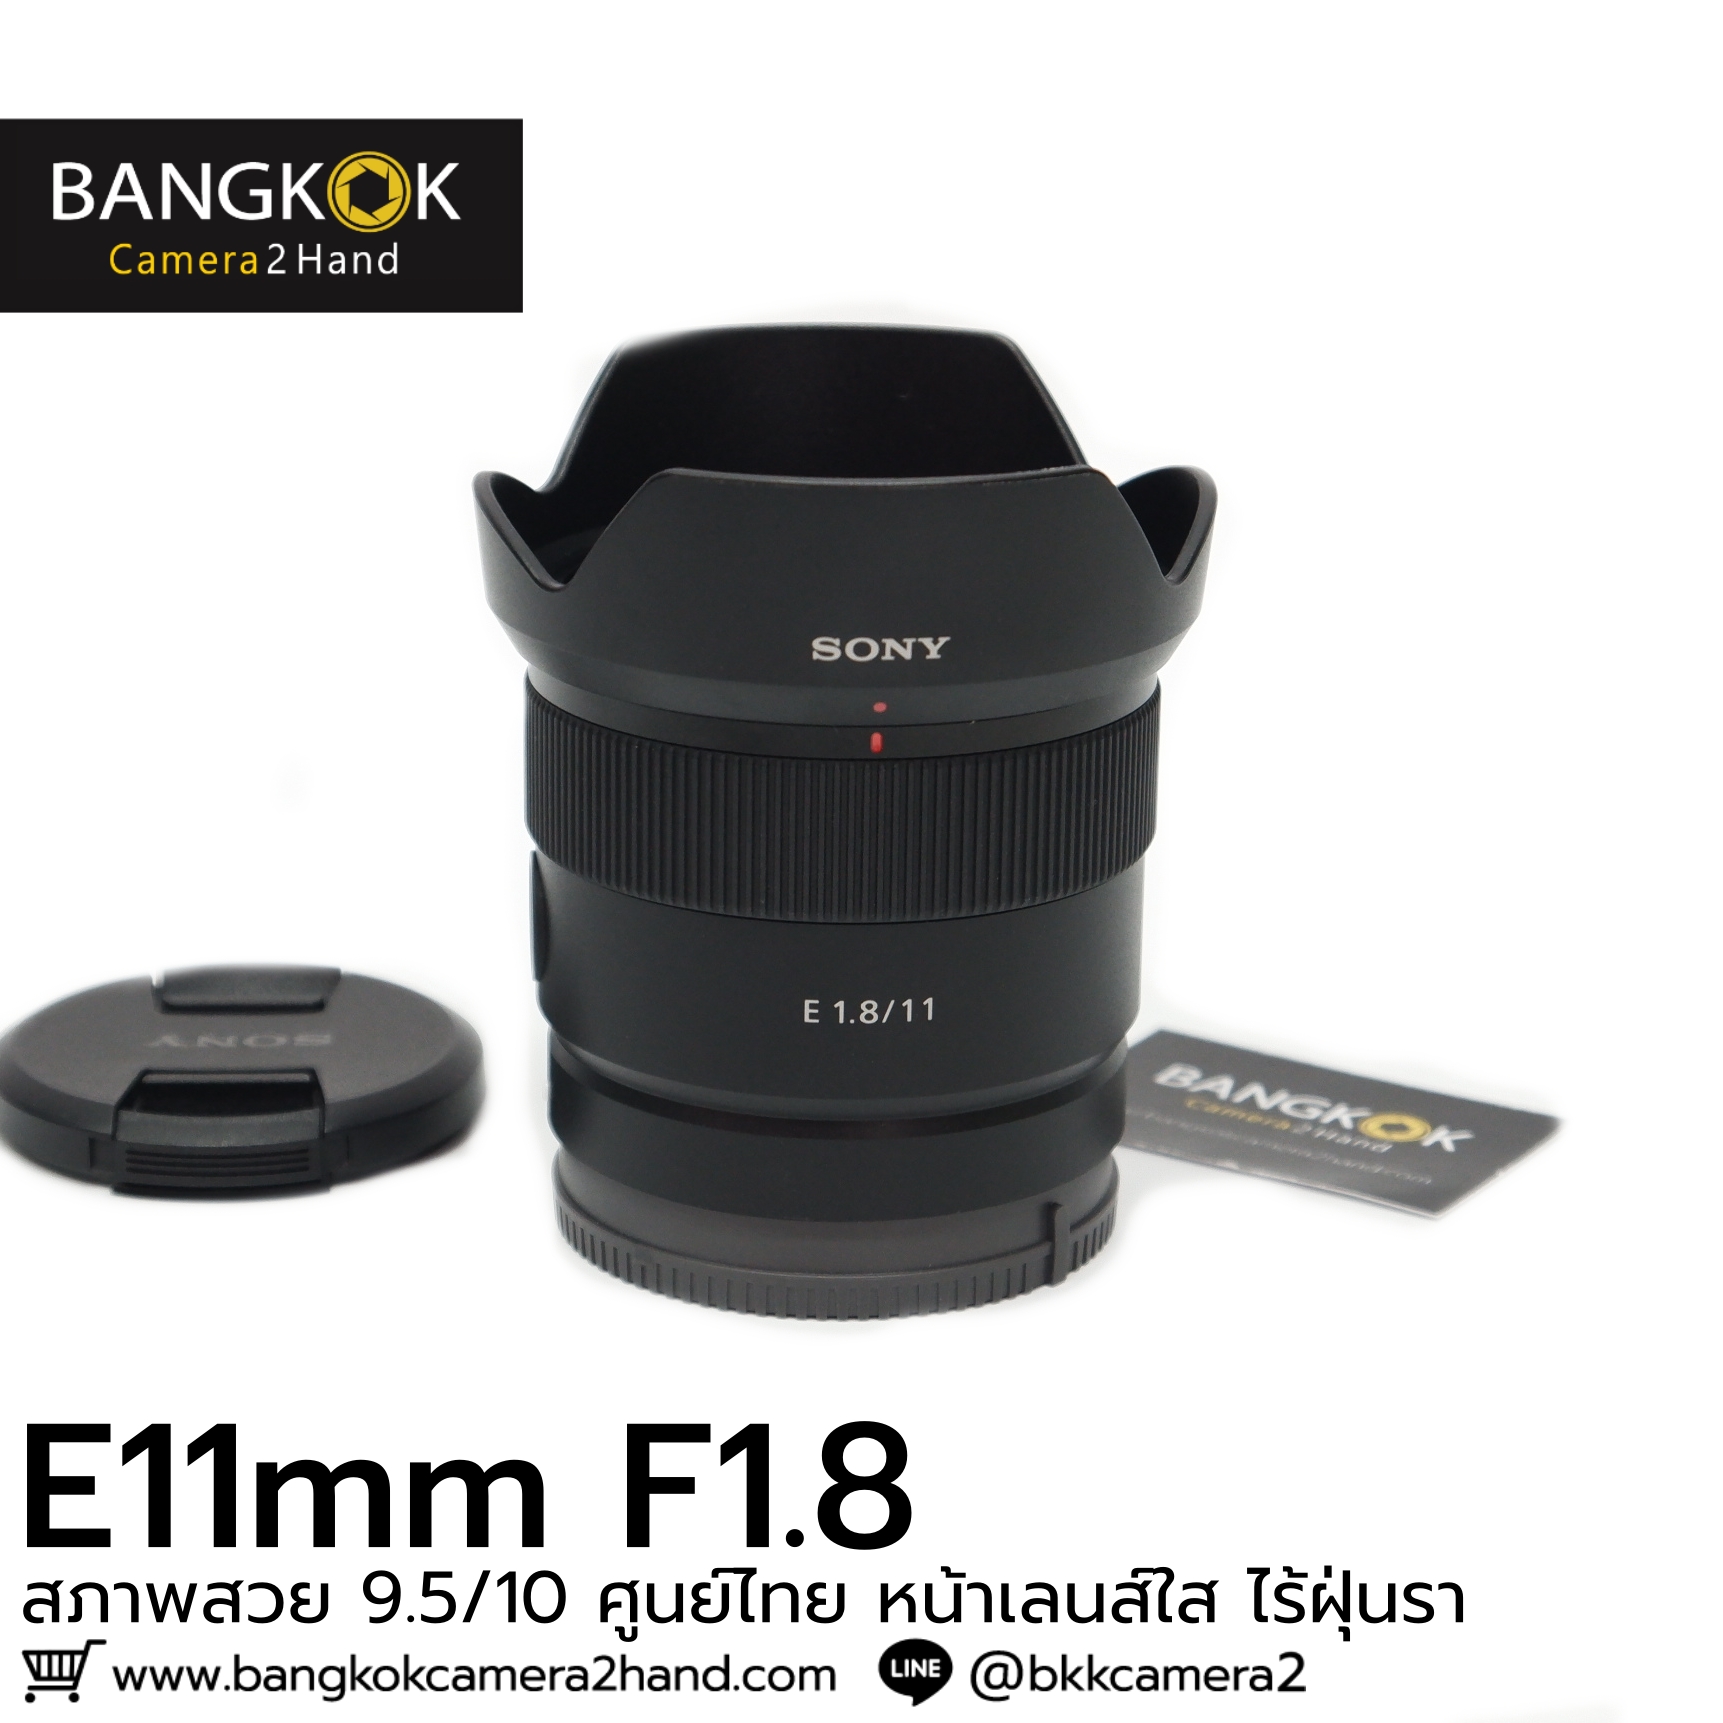 E11mm F1.8 ศูนย์ไทย ใช้งานเต็มระบบ